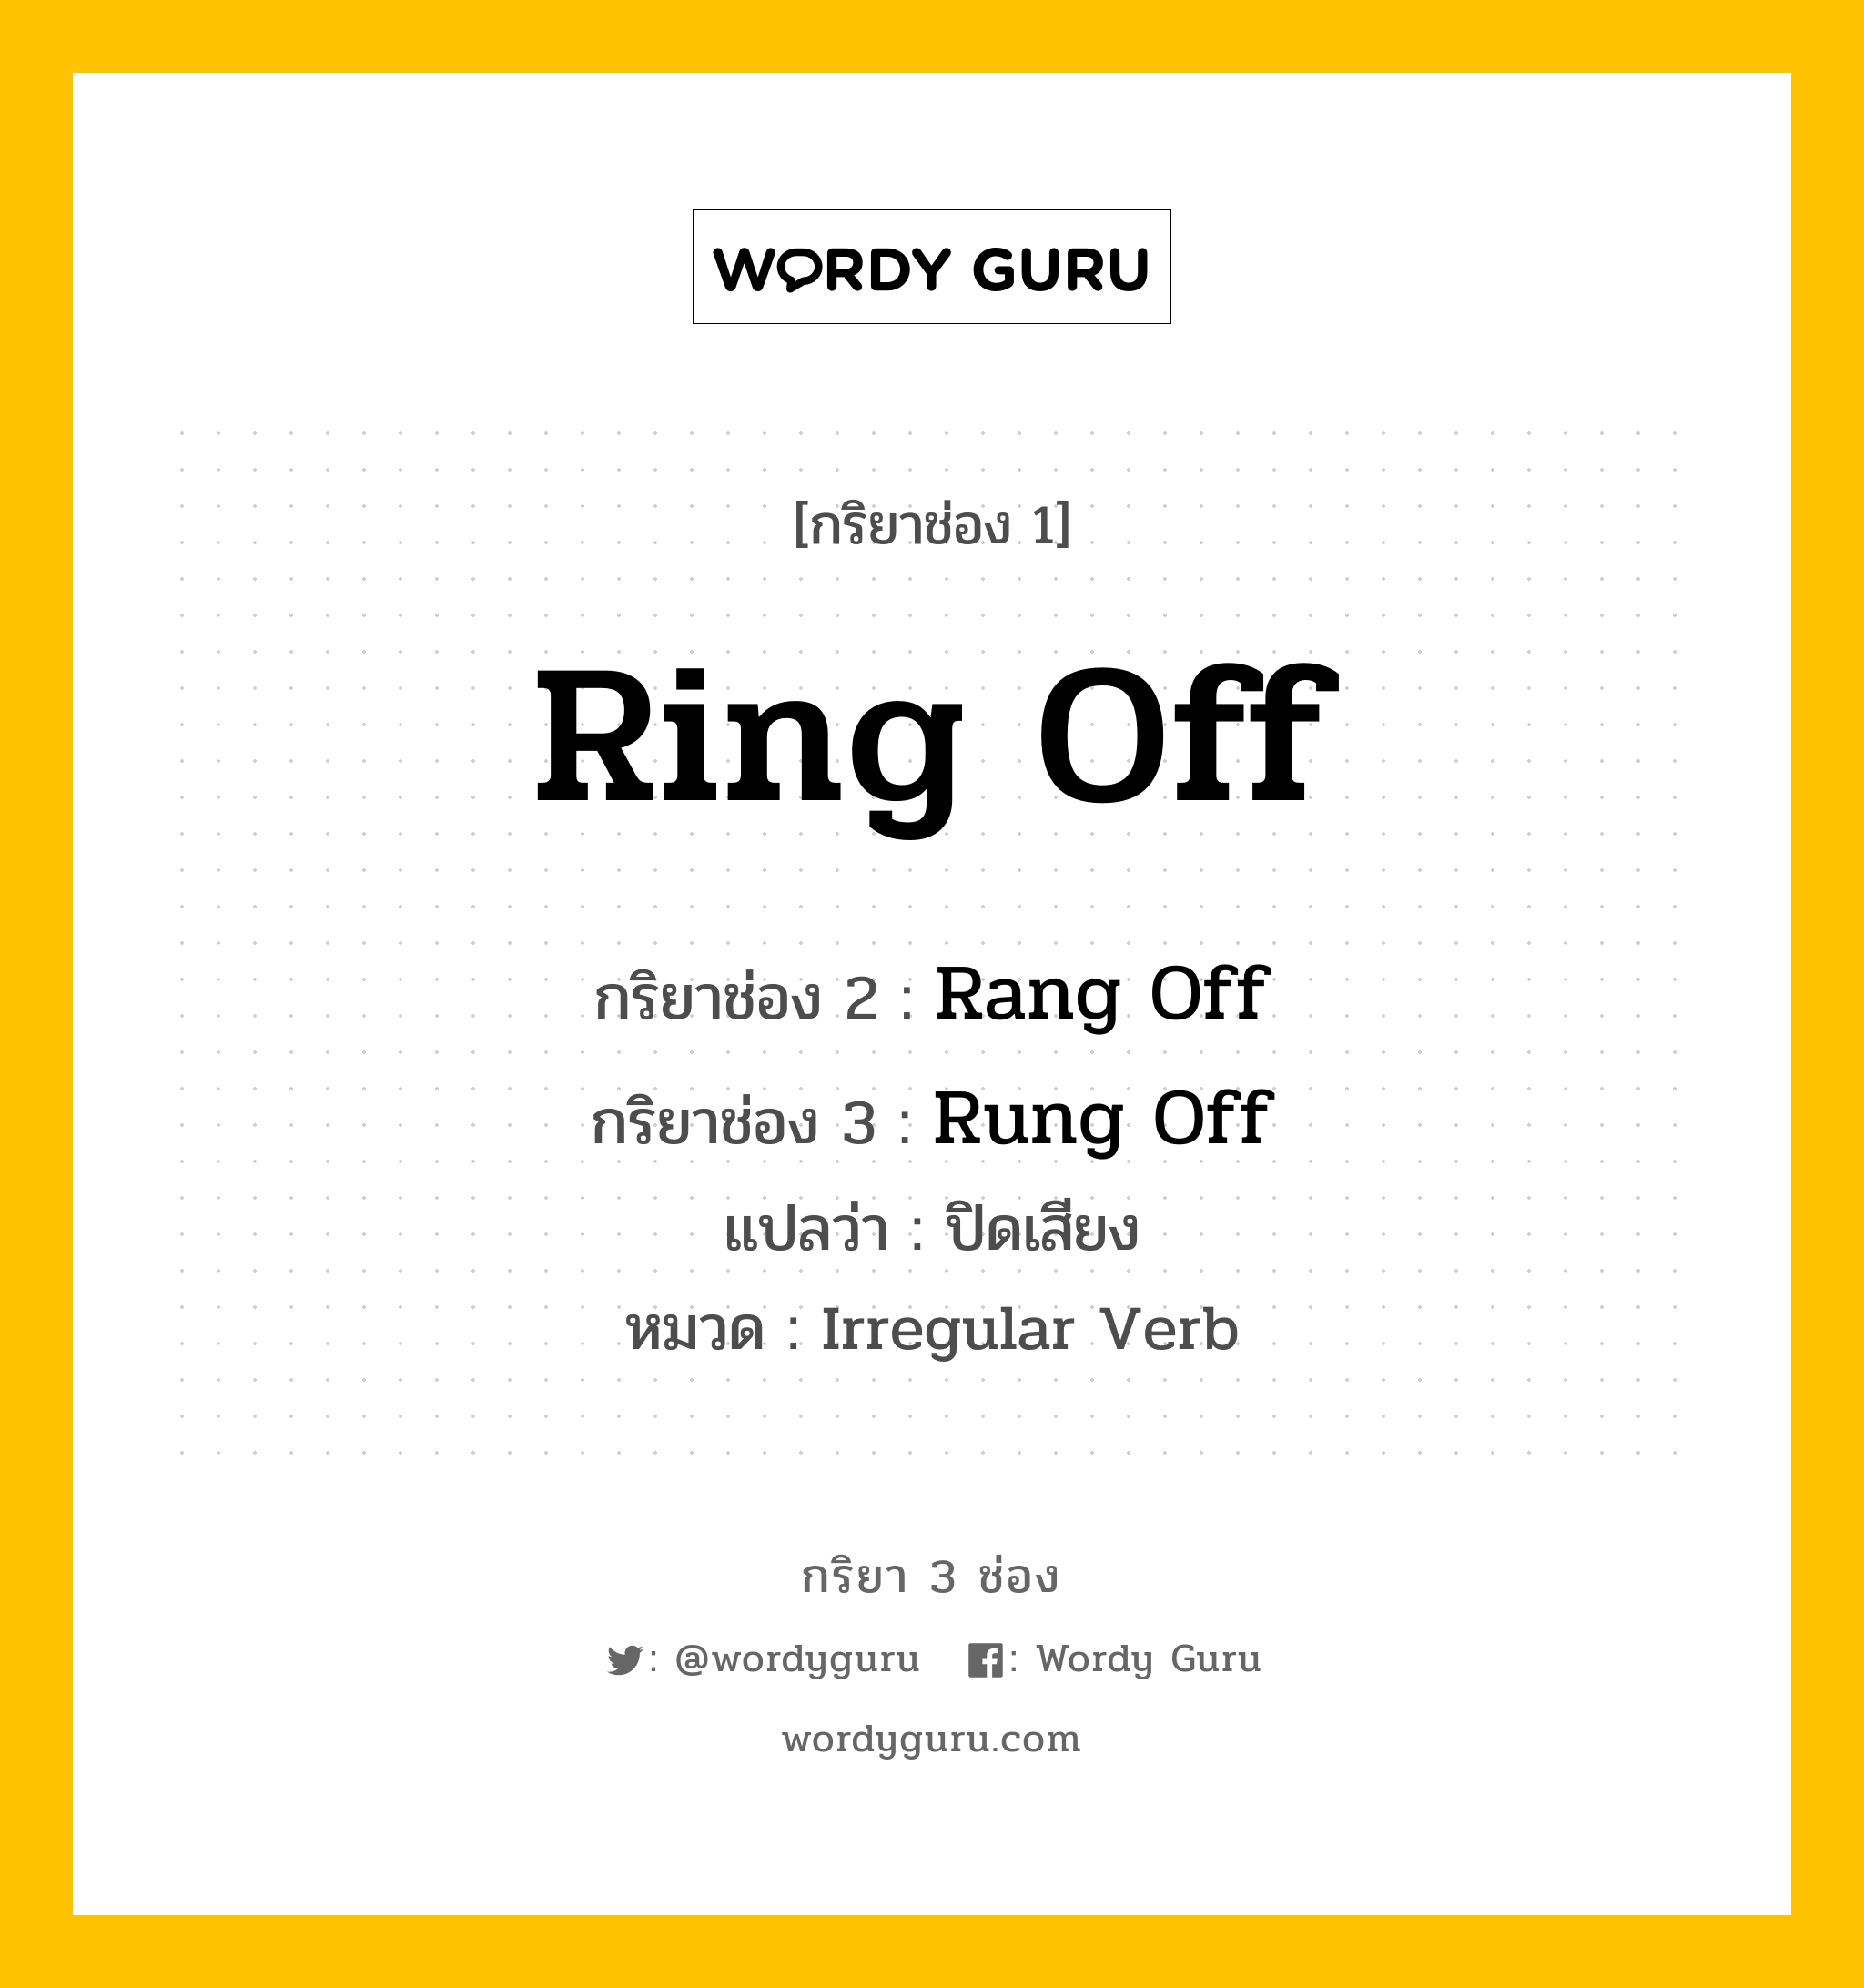 กริยา 3 ช่อง: Ring Off ช่อง 2 Ring Off ช่อง 3 คืออะไร, กริยาช่อง 1 Ring Off กริยาช่อง 2 Rang Off กริยาช่อง 3 Rung Off แปลว่า ปิดเสียง หมวด Irregular Verb หมวด Irregular Verb